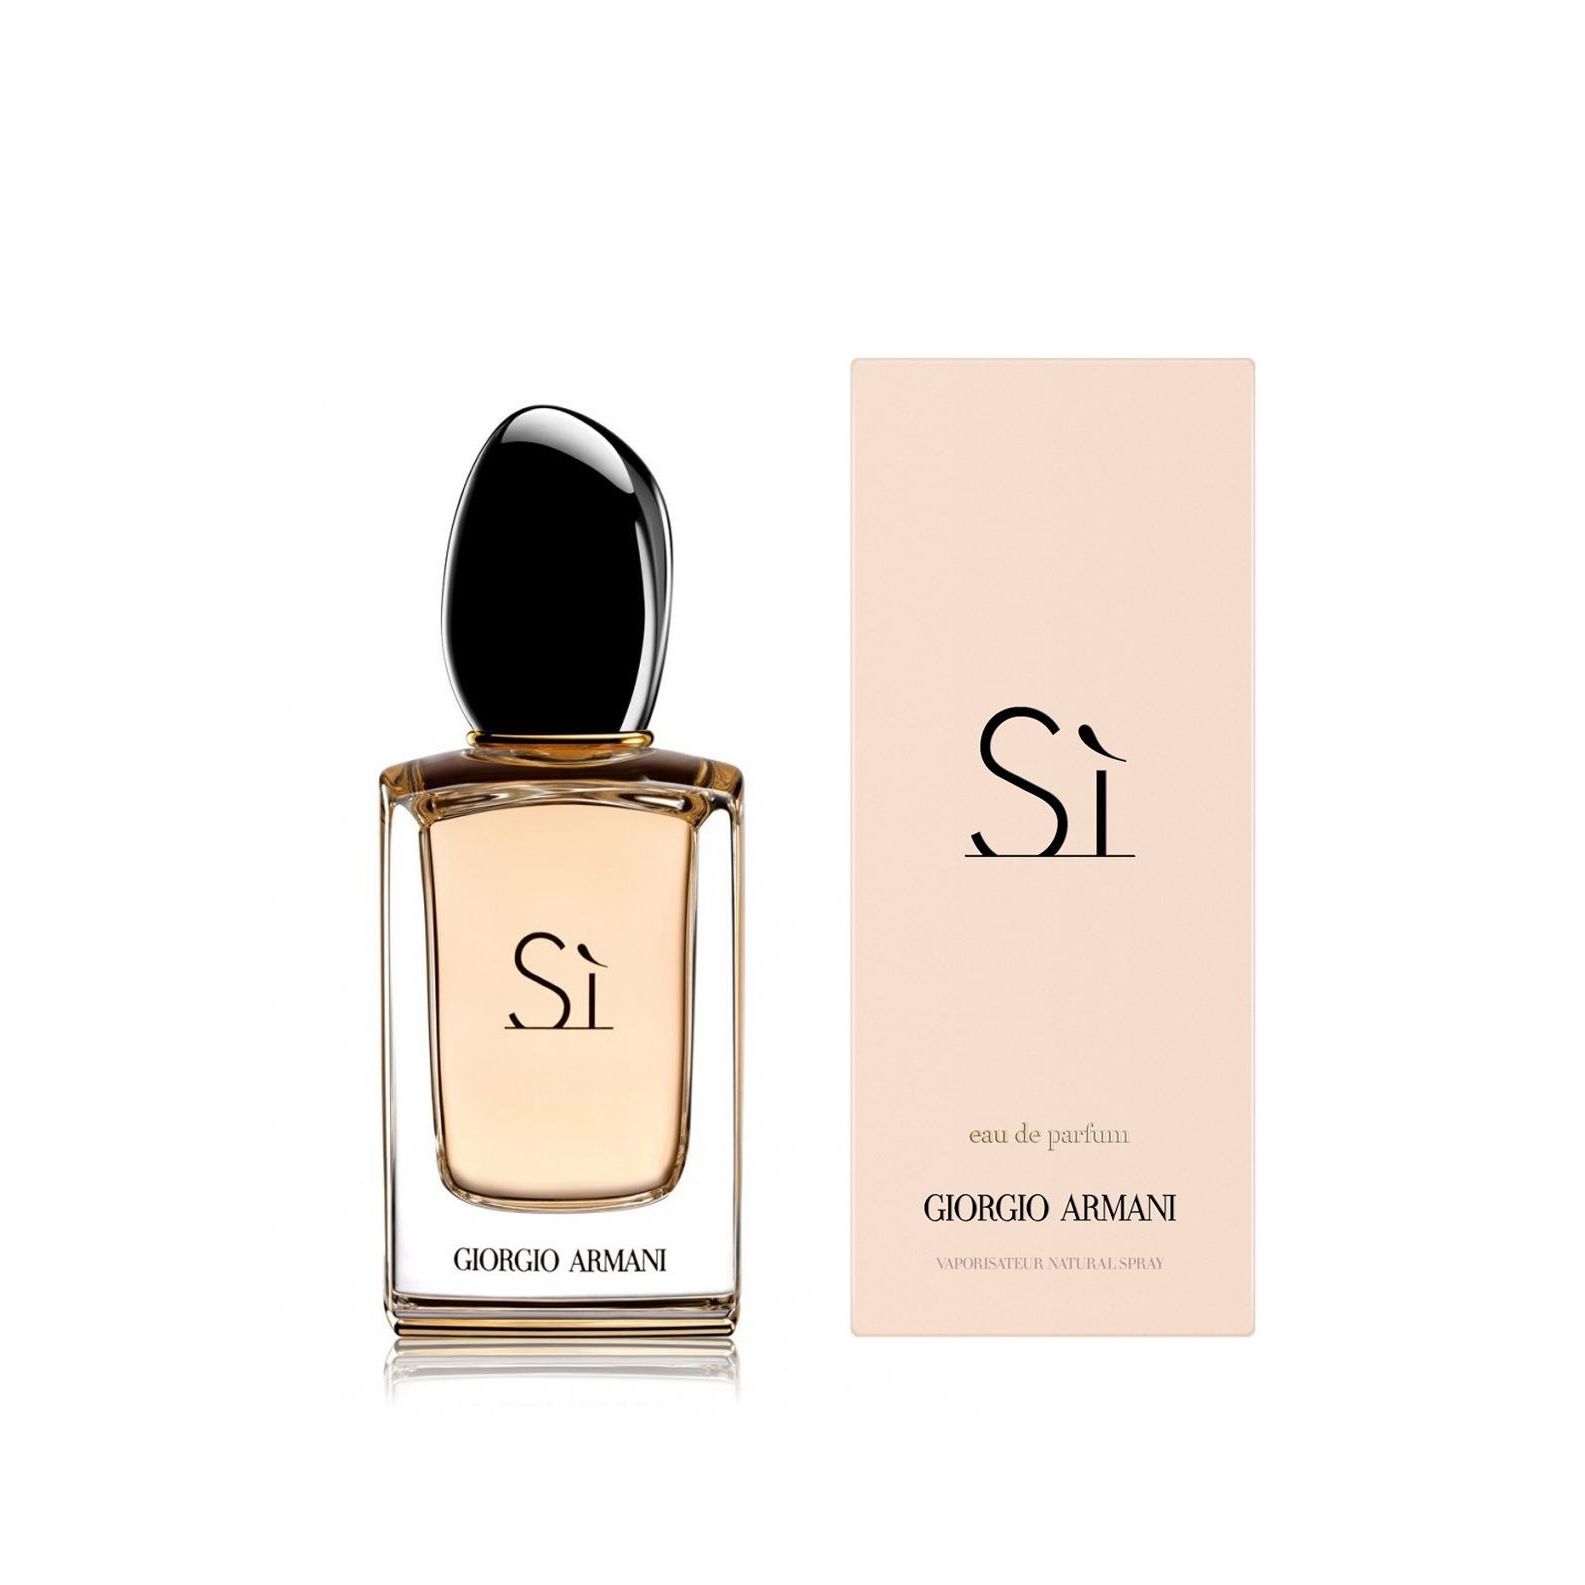 perfumesdemayoreo | Tienda